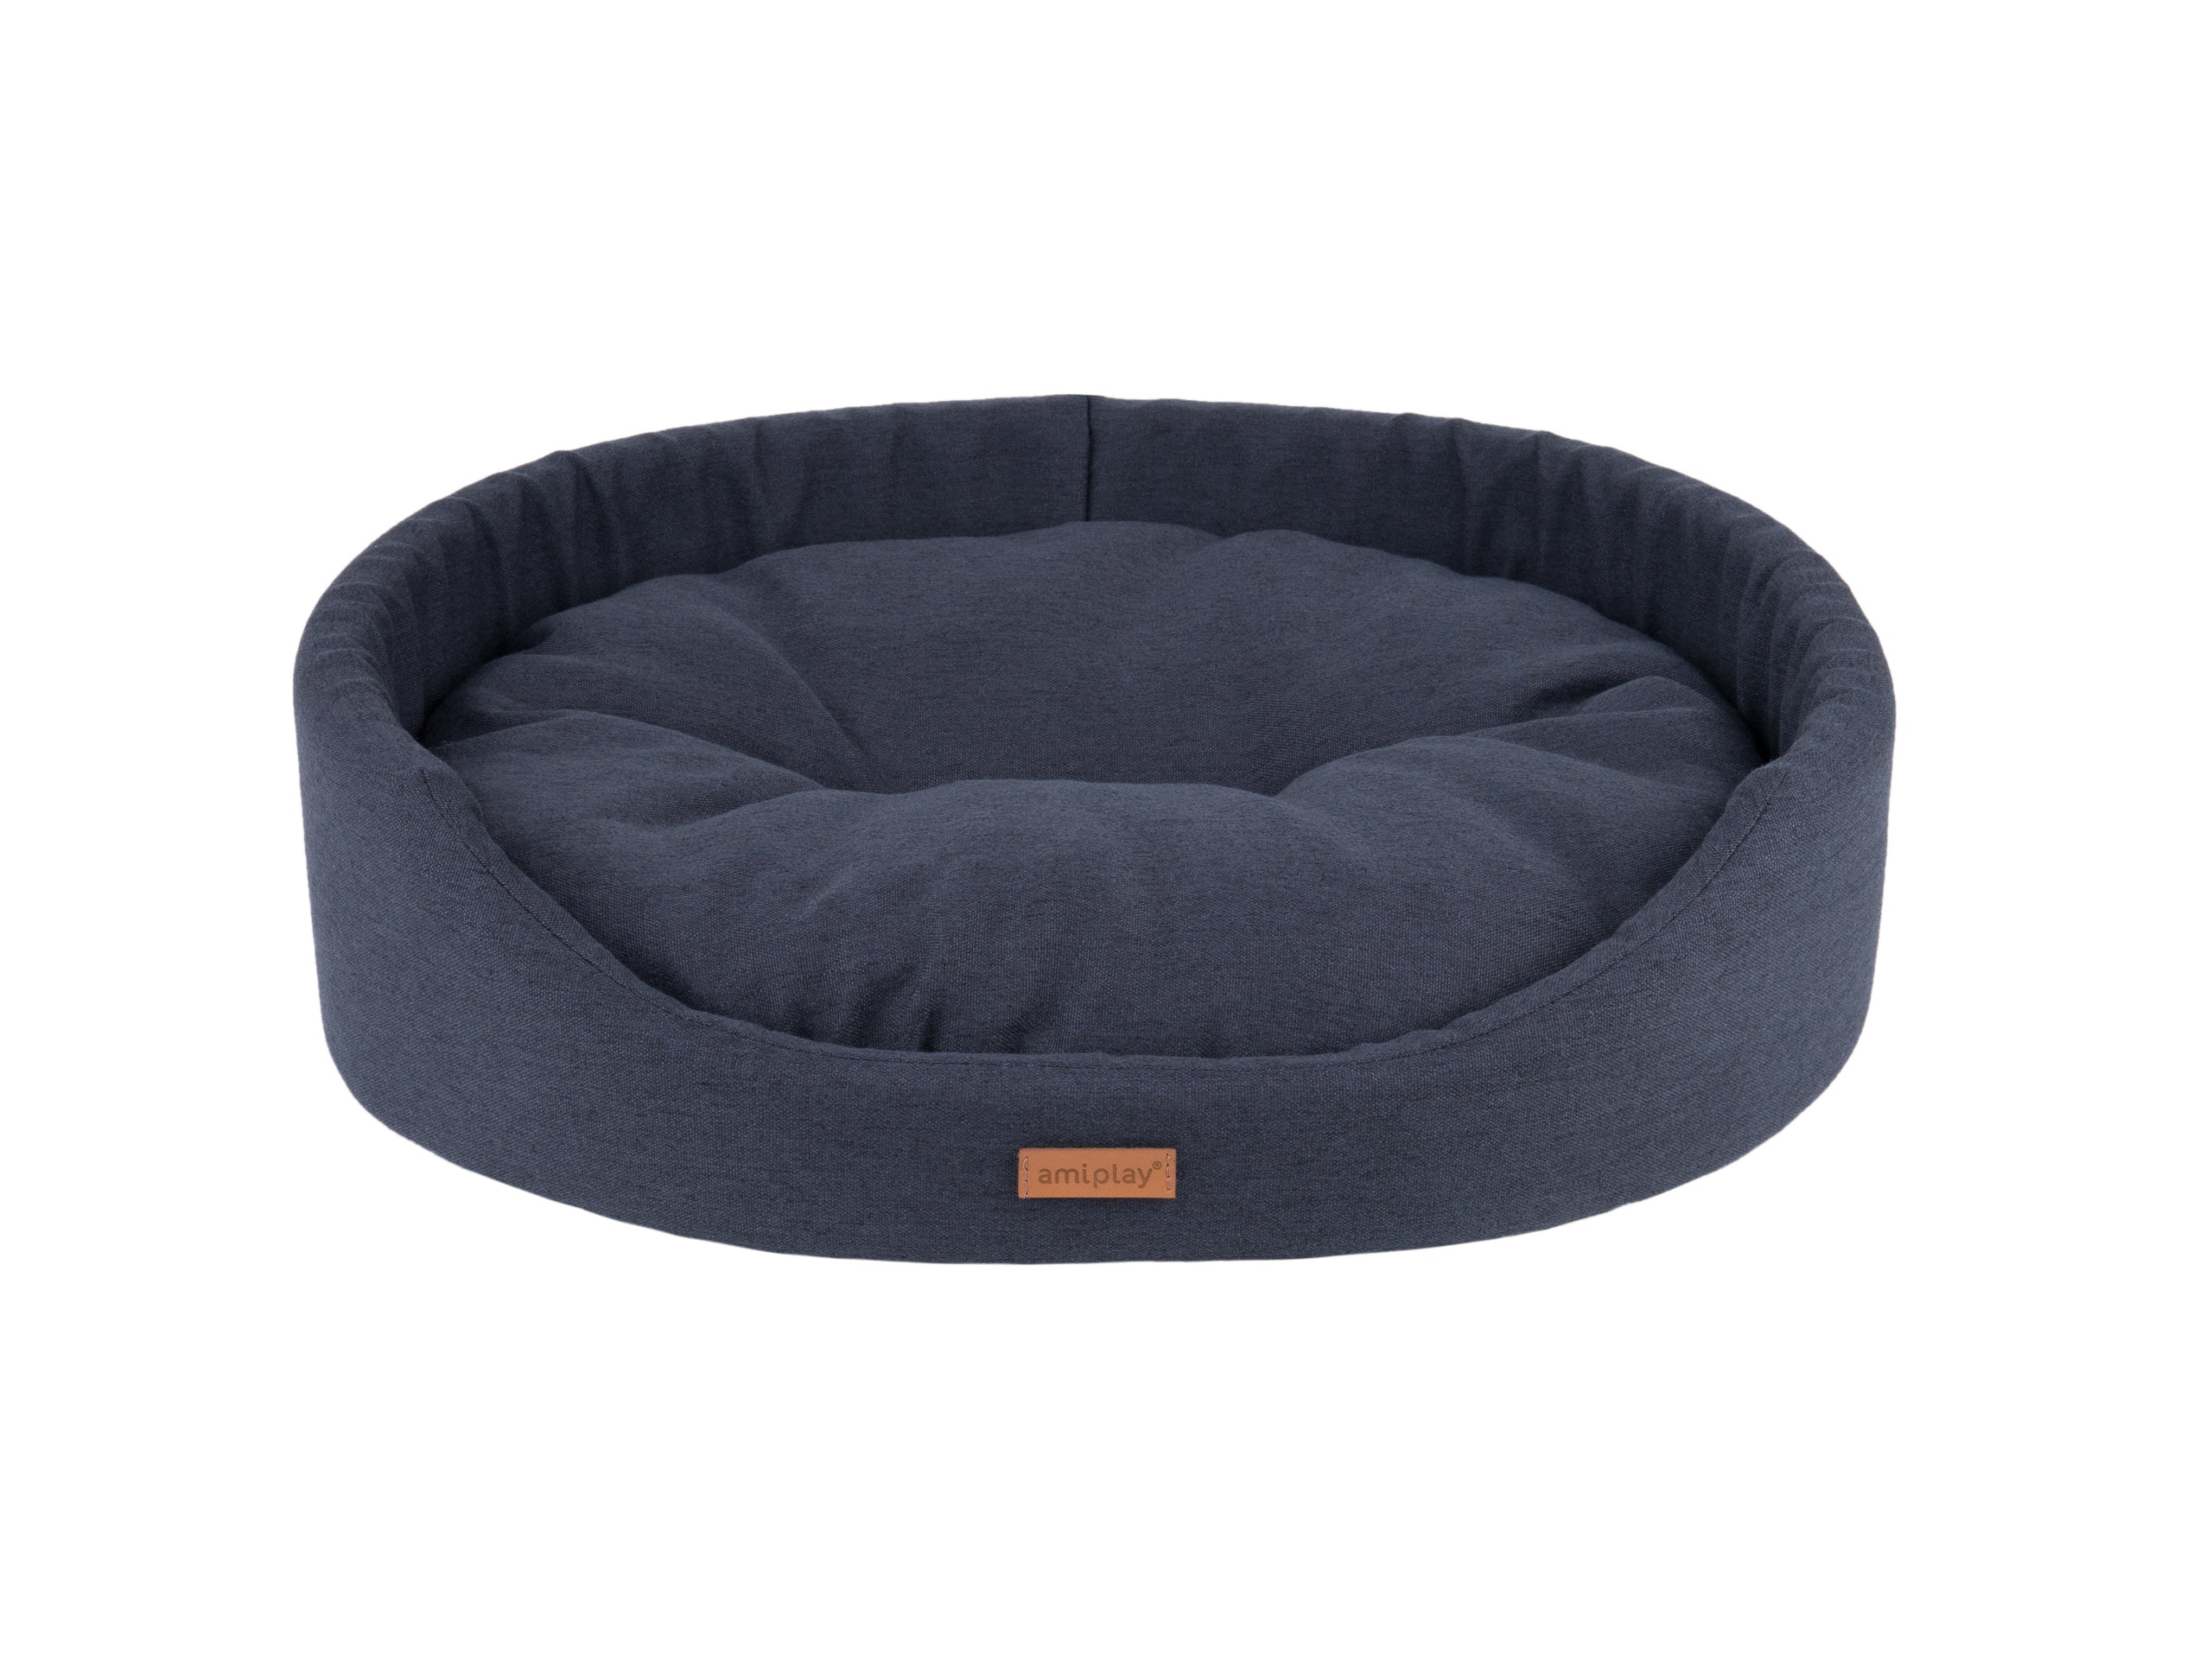 Billede af KW - Amiplay oval seng sort M-XXL hundeseng - L 58x50x15cm - Dog Beds